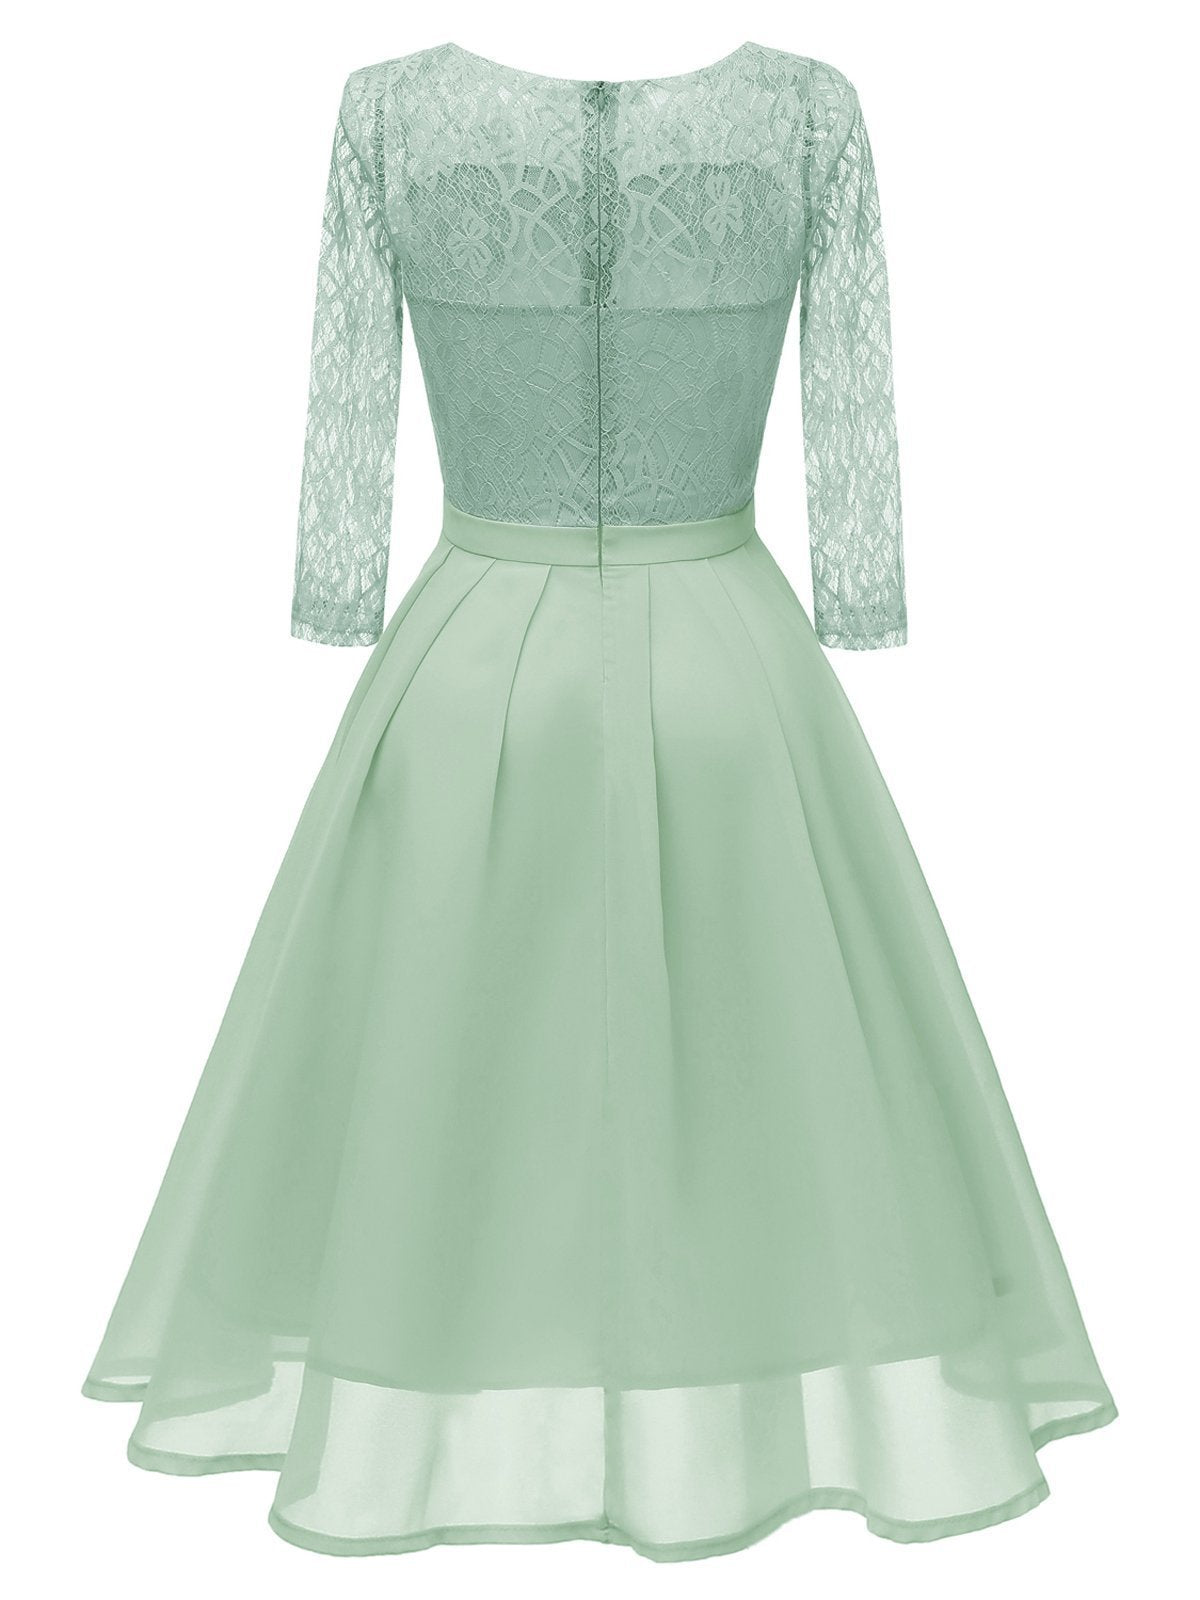 1950s Lace 3/4 Sleeve Swing Dress